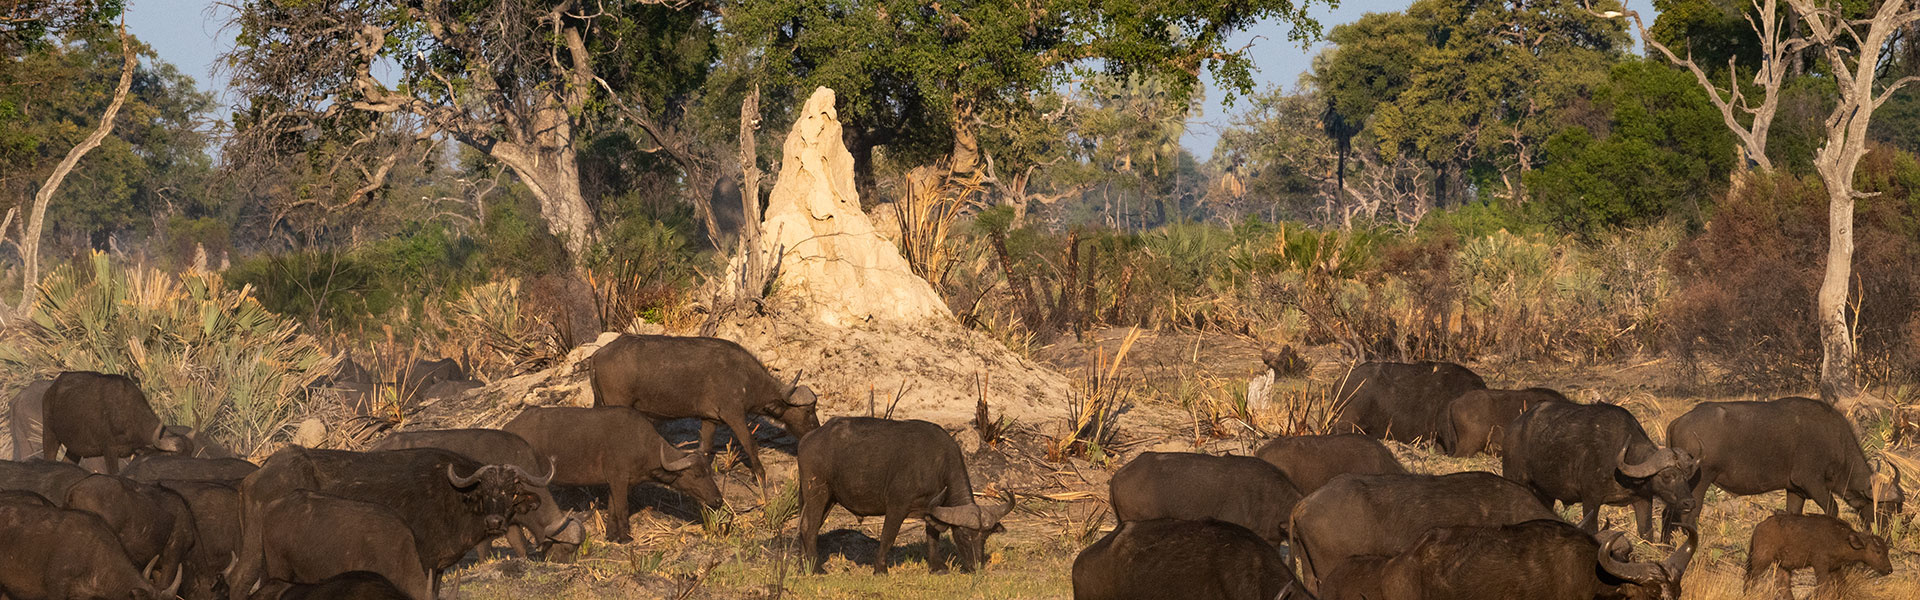 Les termitières du Delta de l'Okavango | Sous l'Acacia